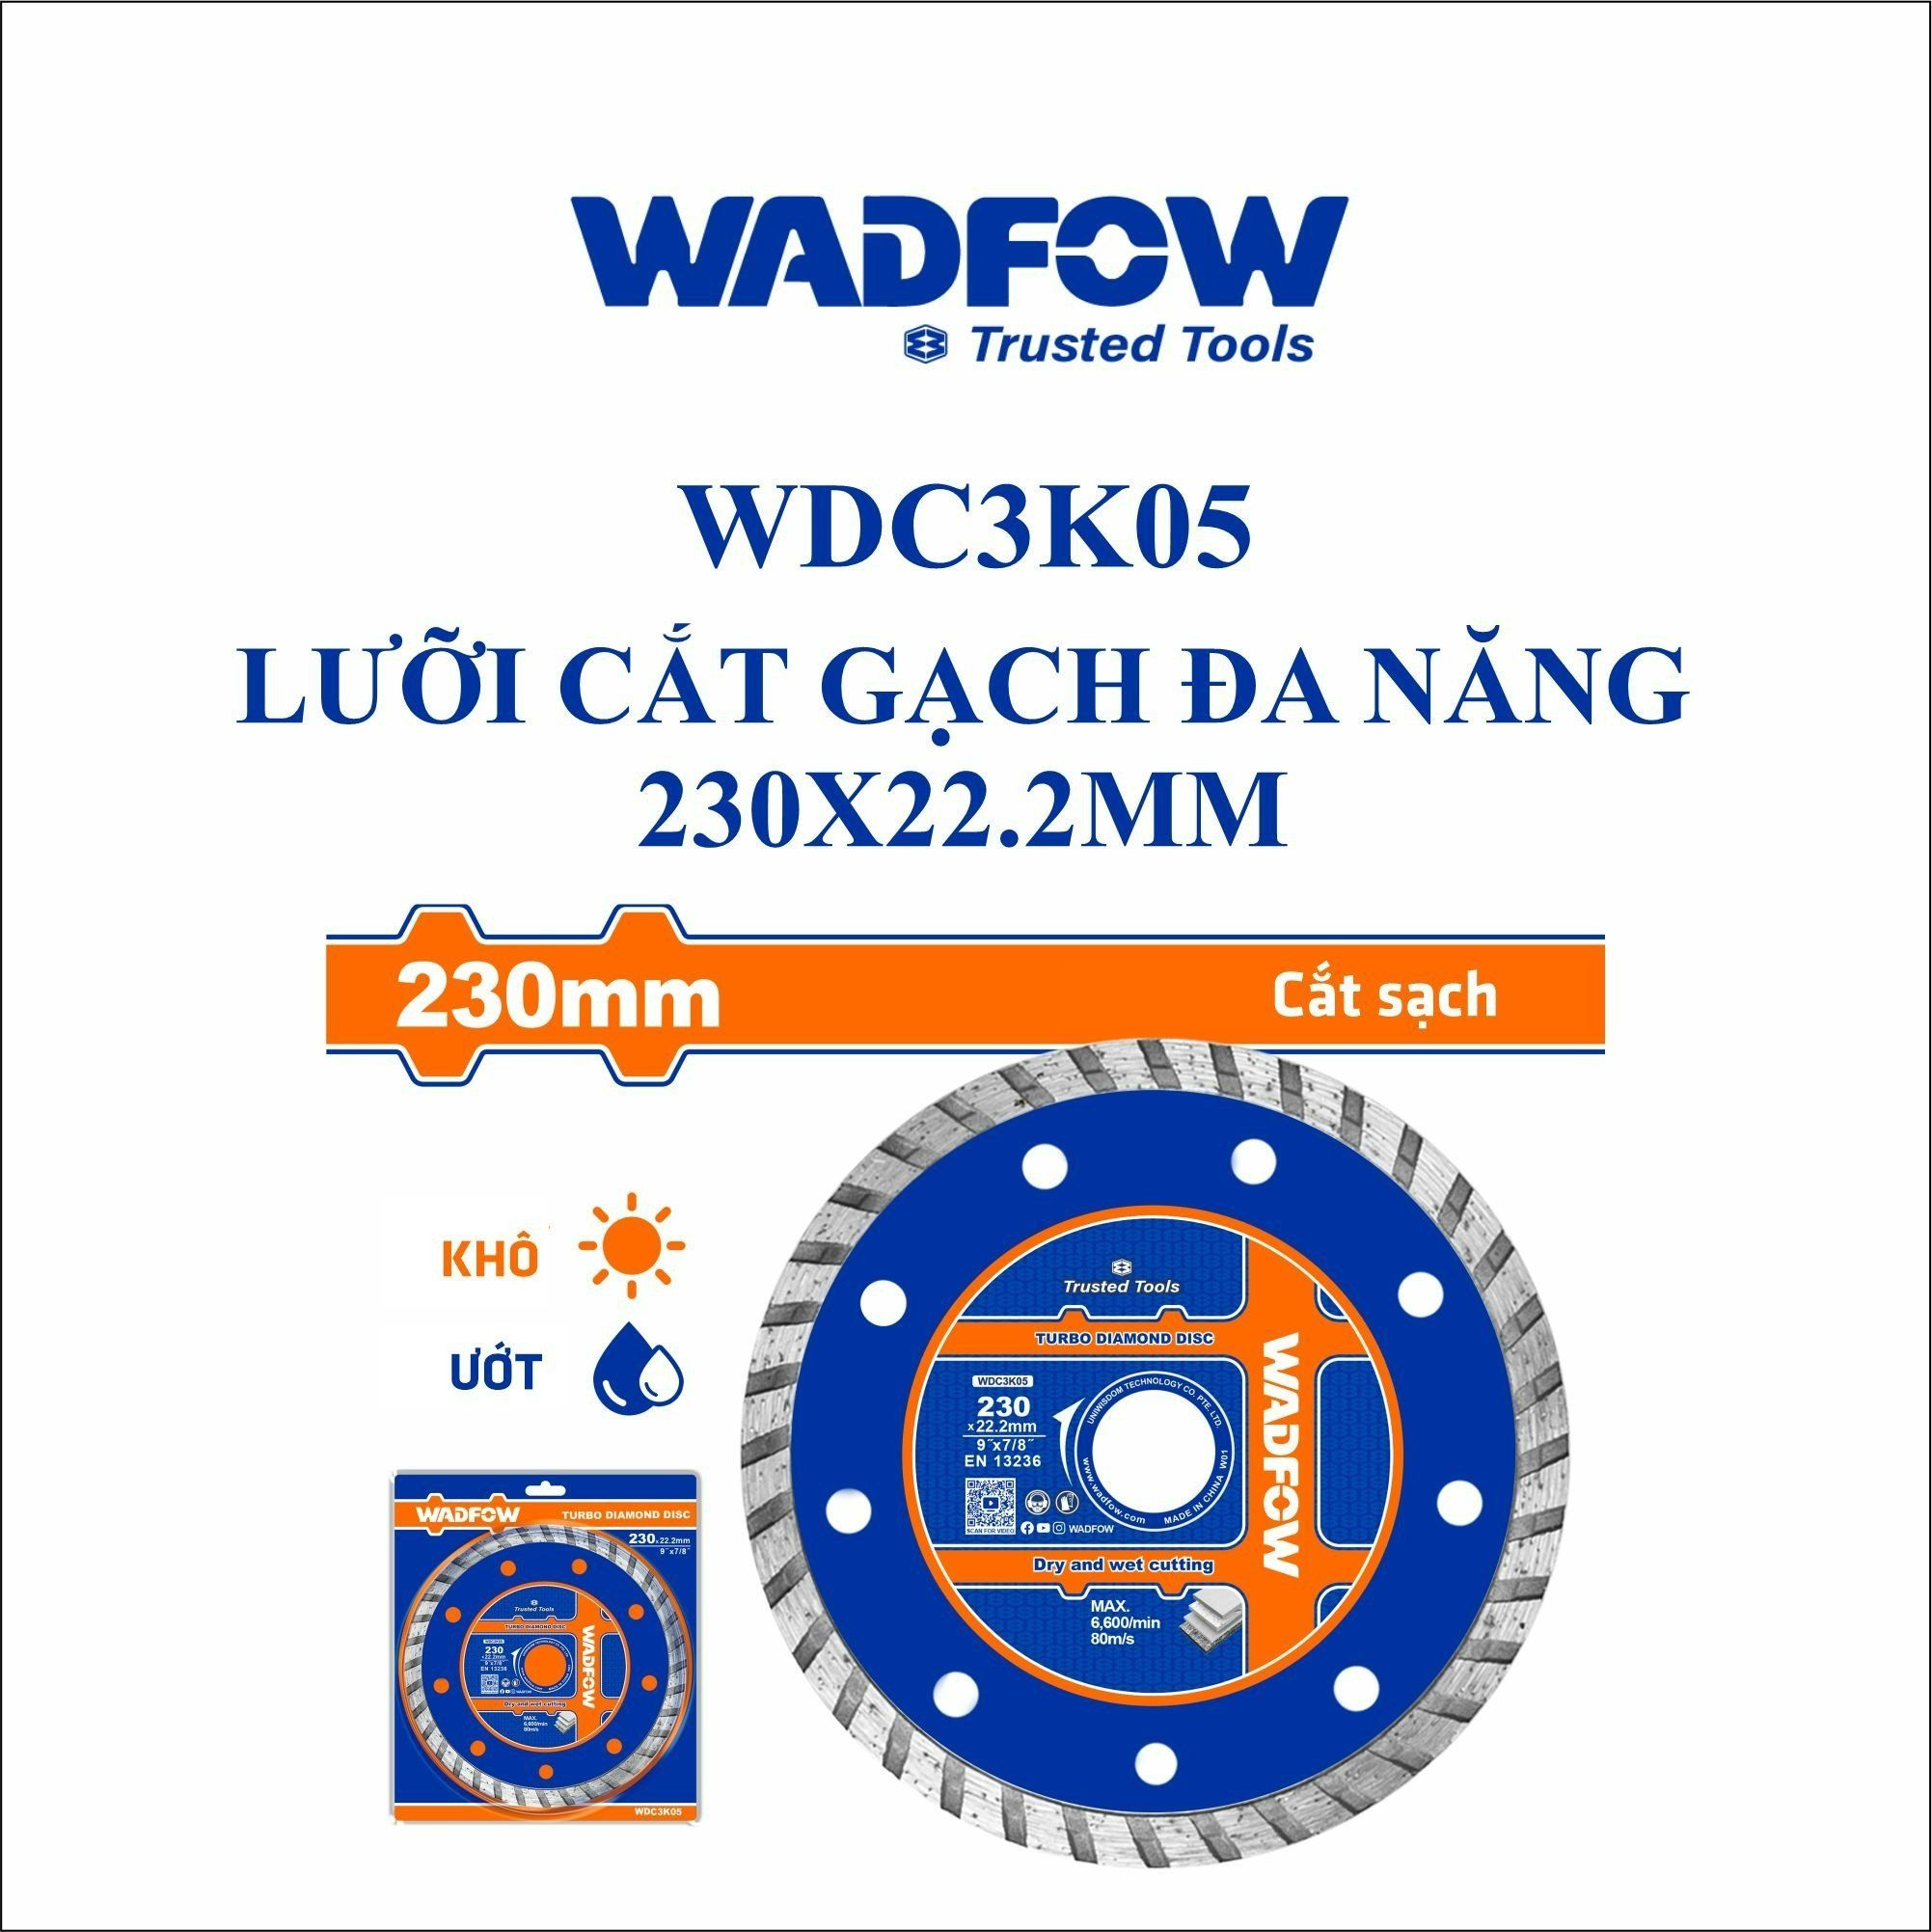  Lưỡi cắt gạch đa năng 230x22.2mm WADFOW WDC3K05 